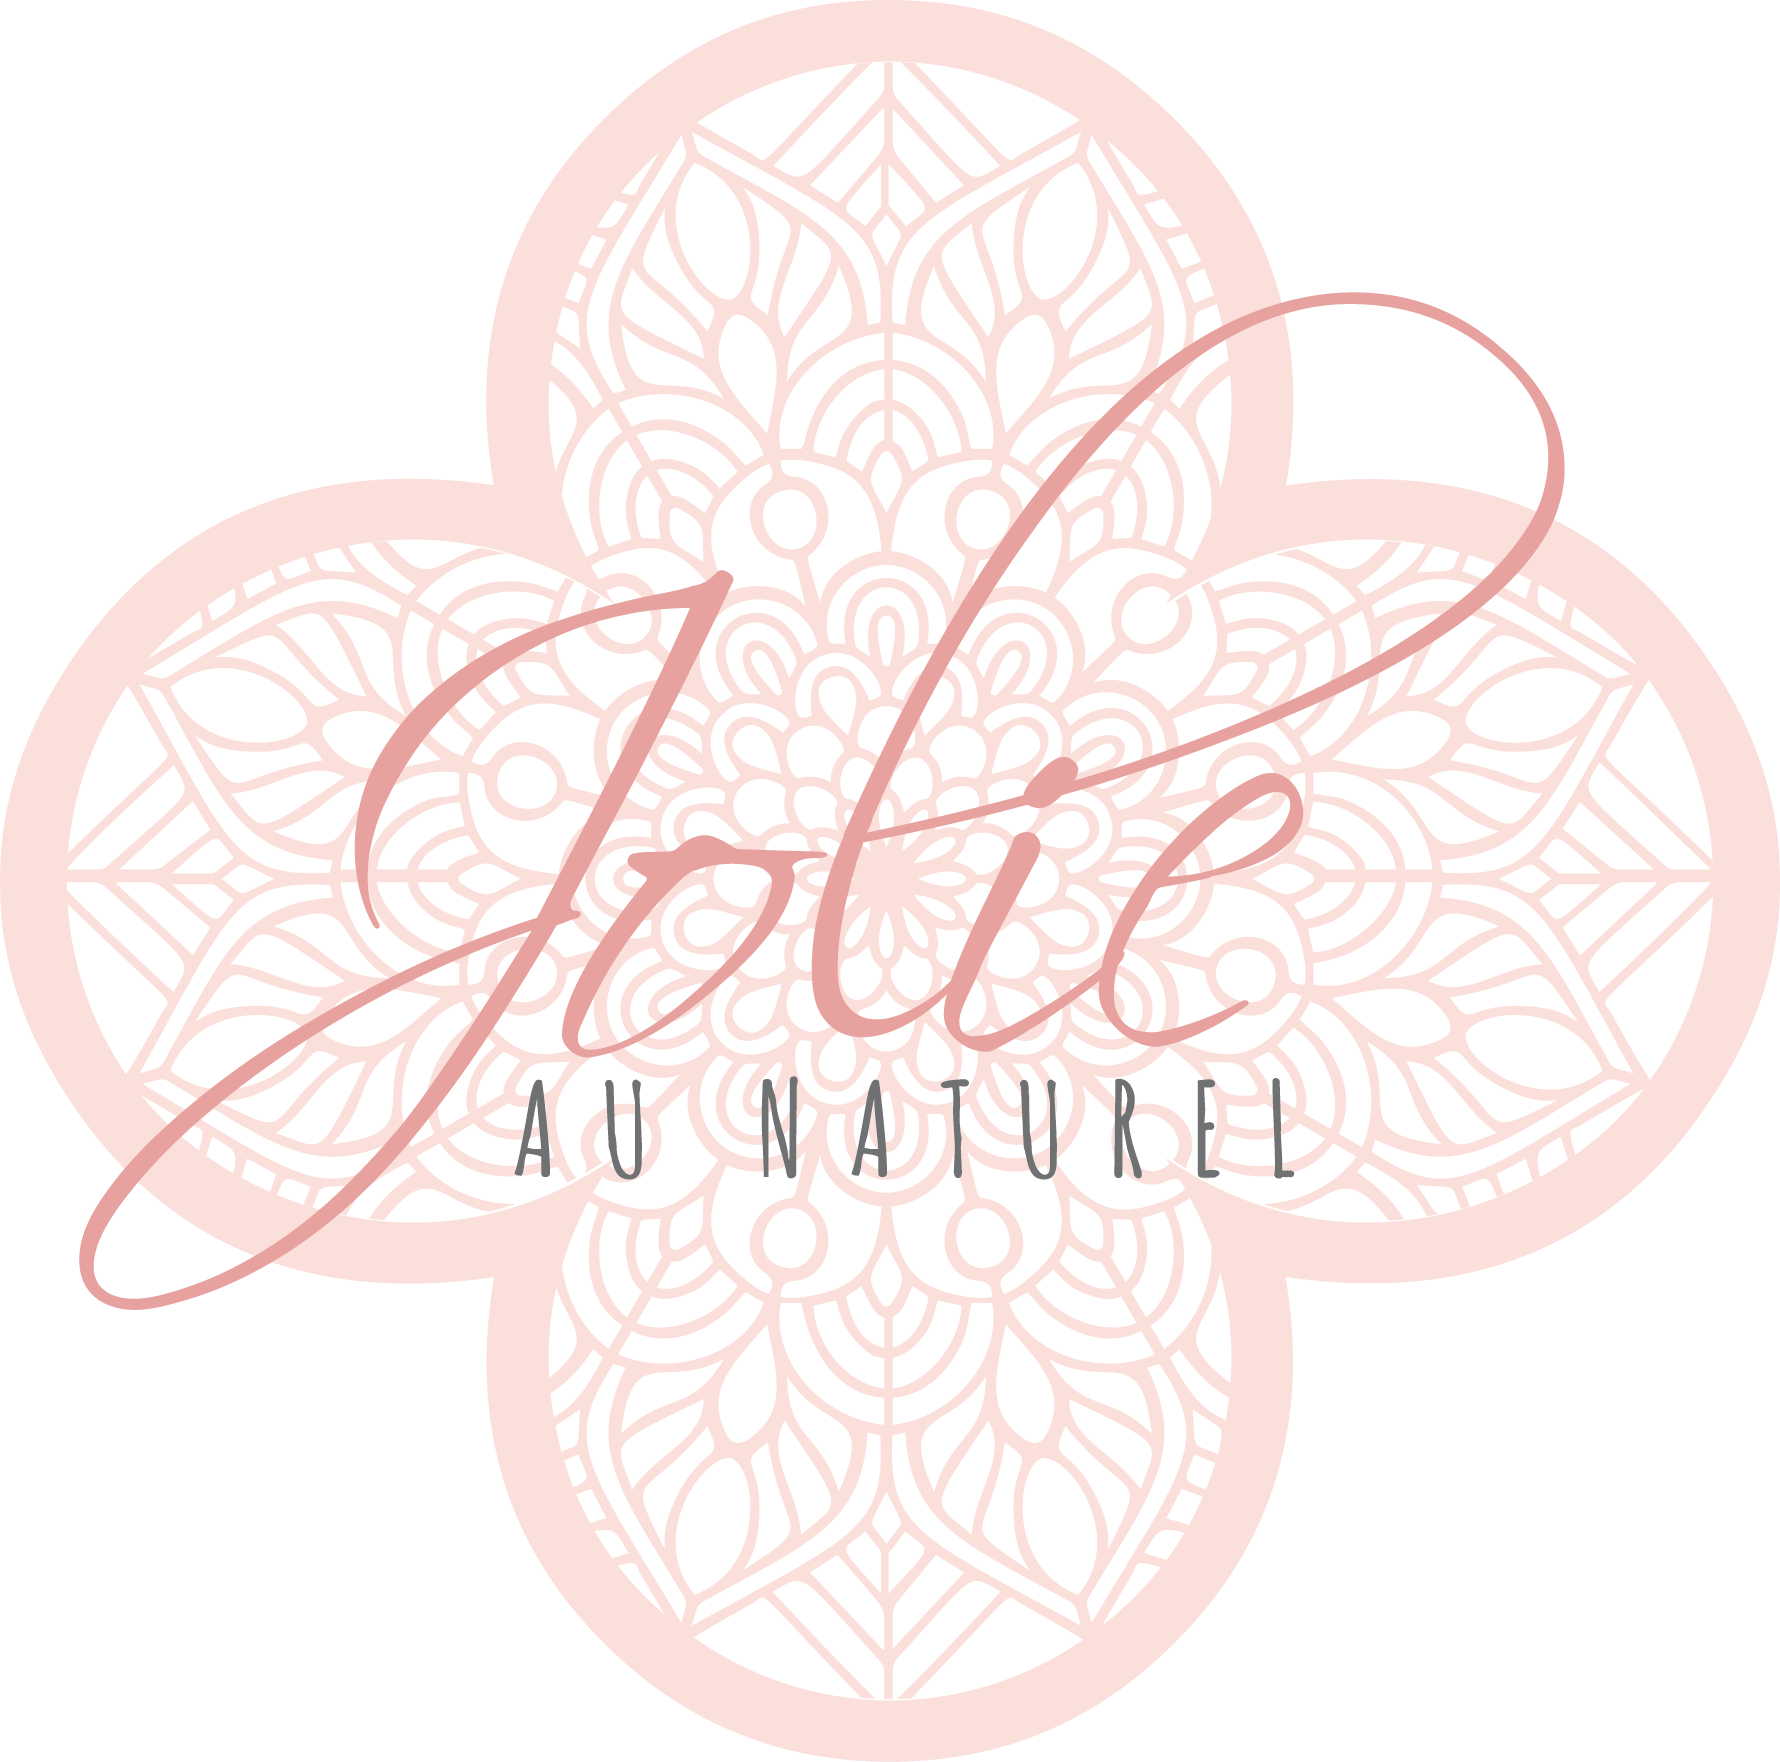 (c) Jolie-au-naturel.com